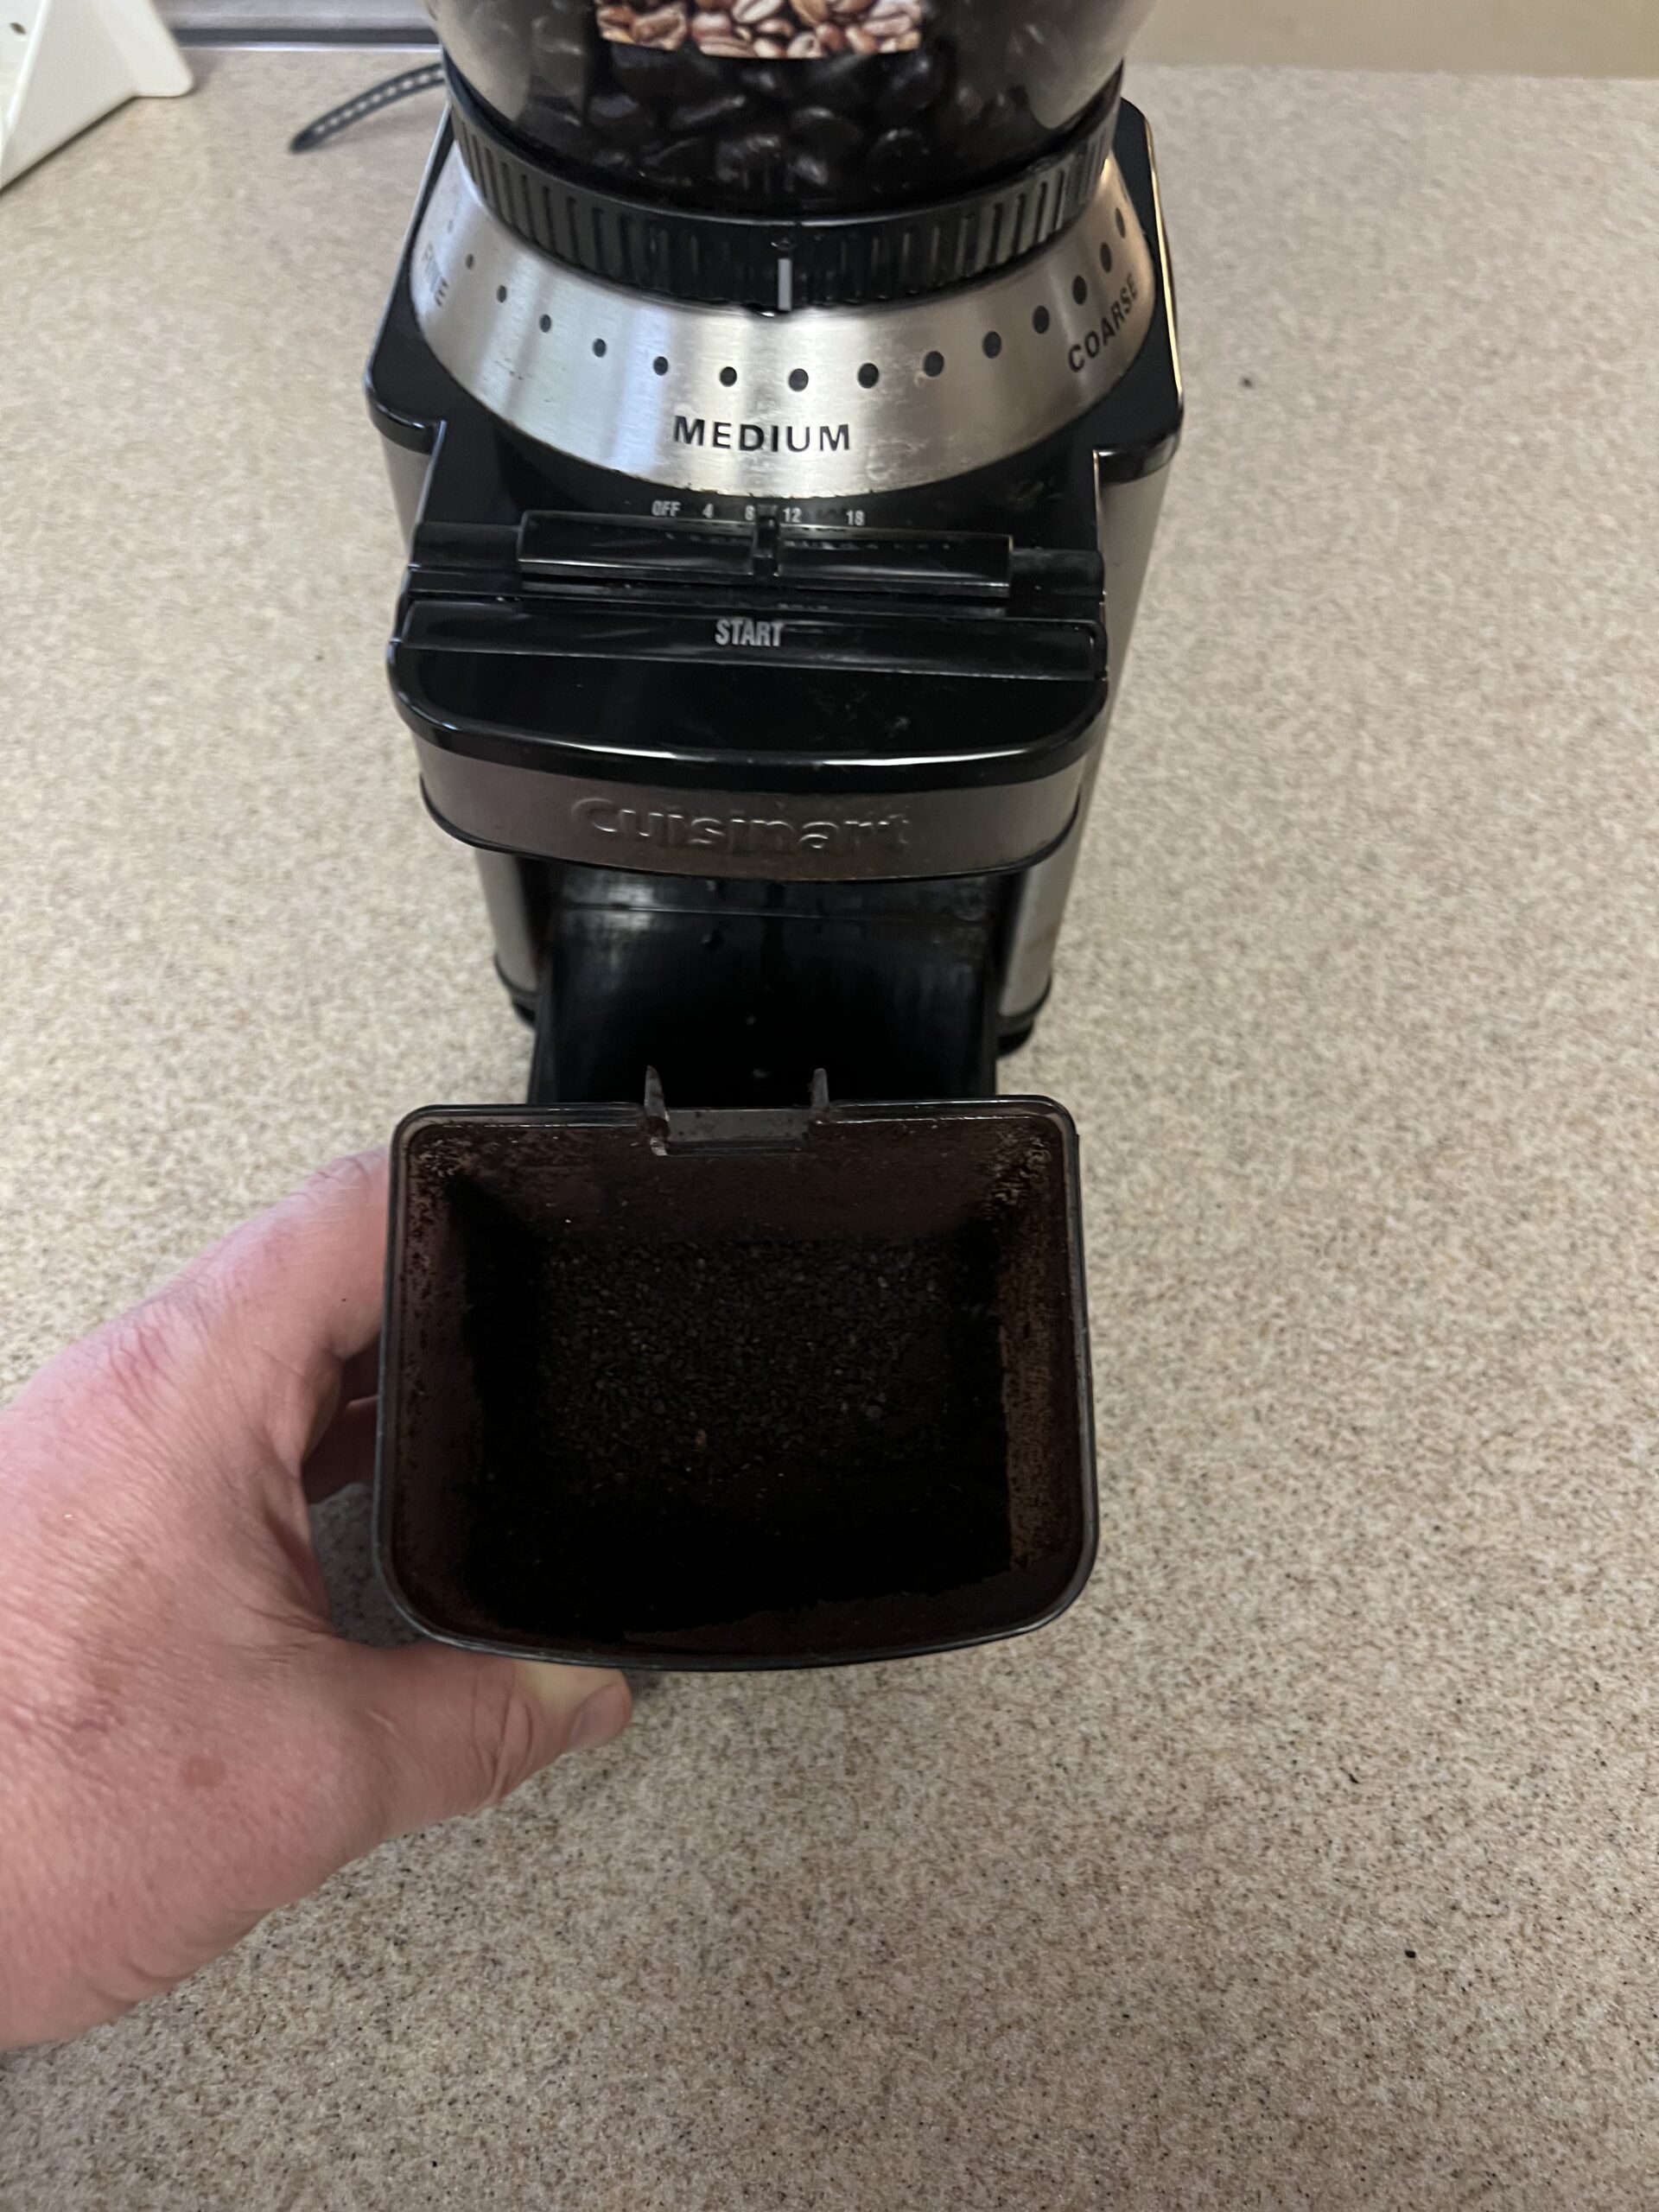 Cómo limpiar un molinillo de café Cuisinart DBM-8: 2 formas sencillas